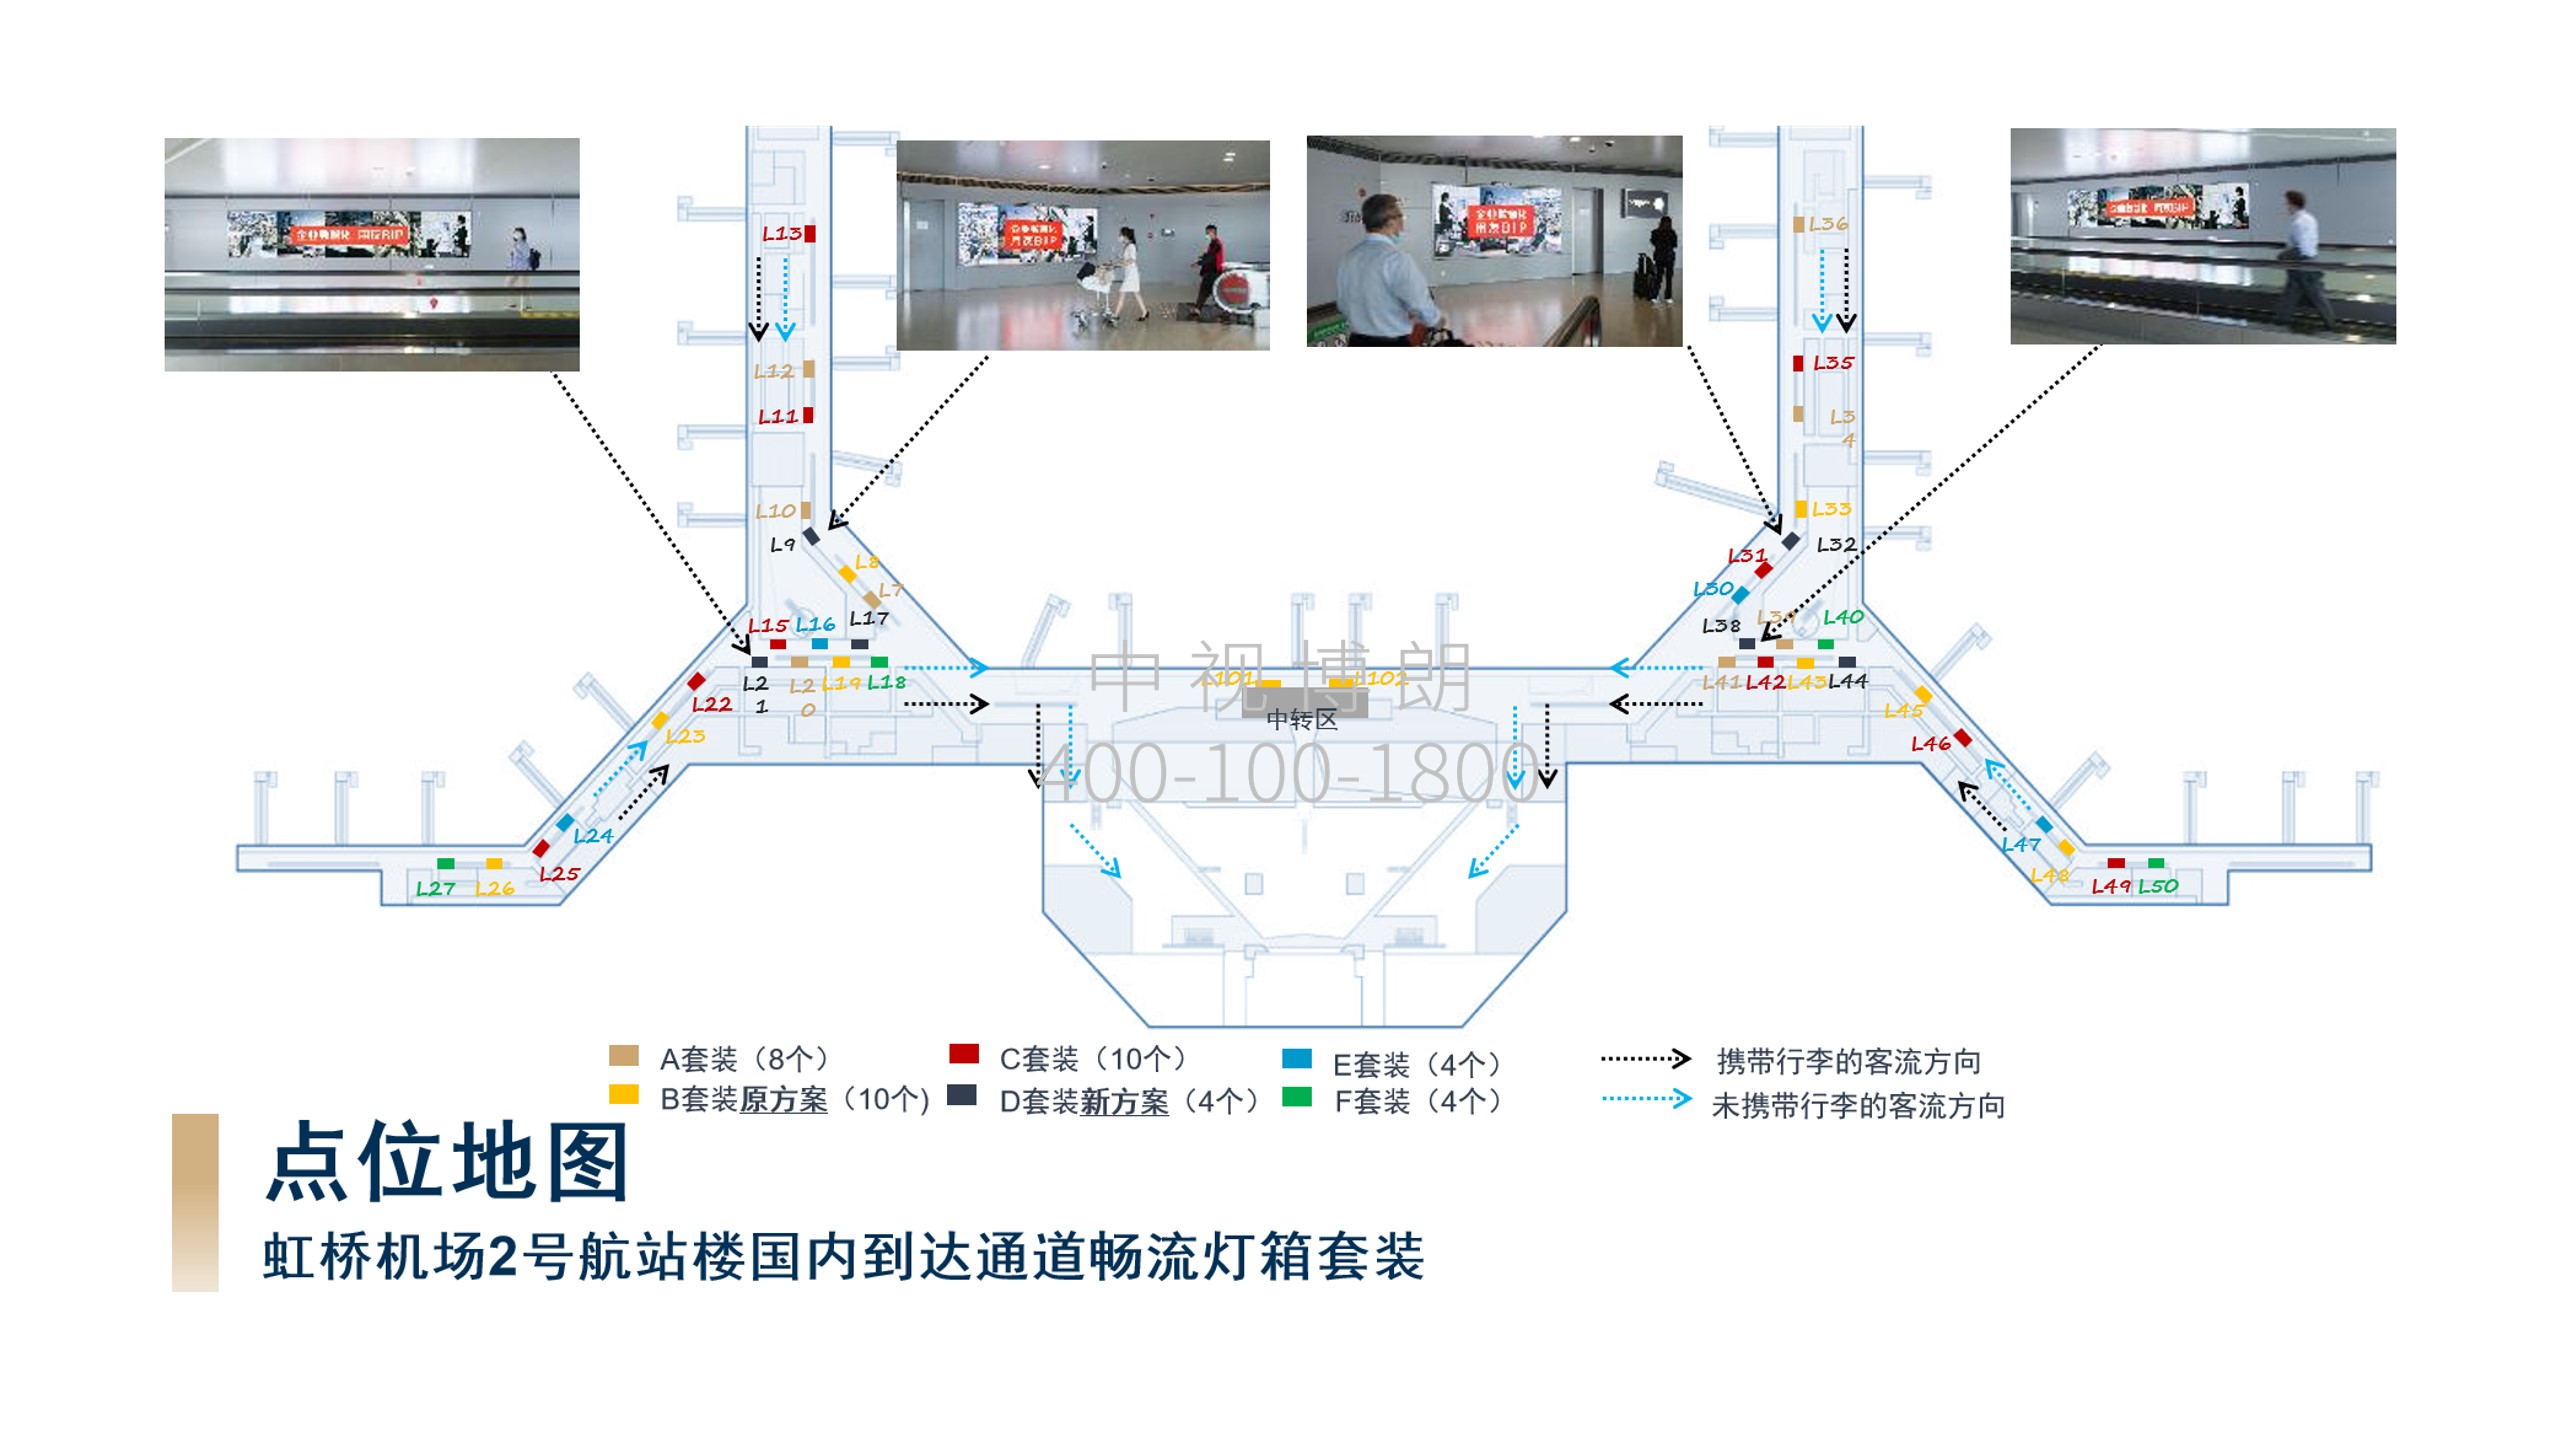 上海机场广告-虹桥T2到达通道灯箱套装位置图